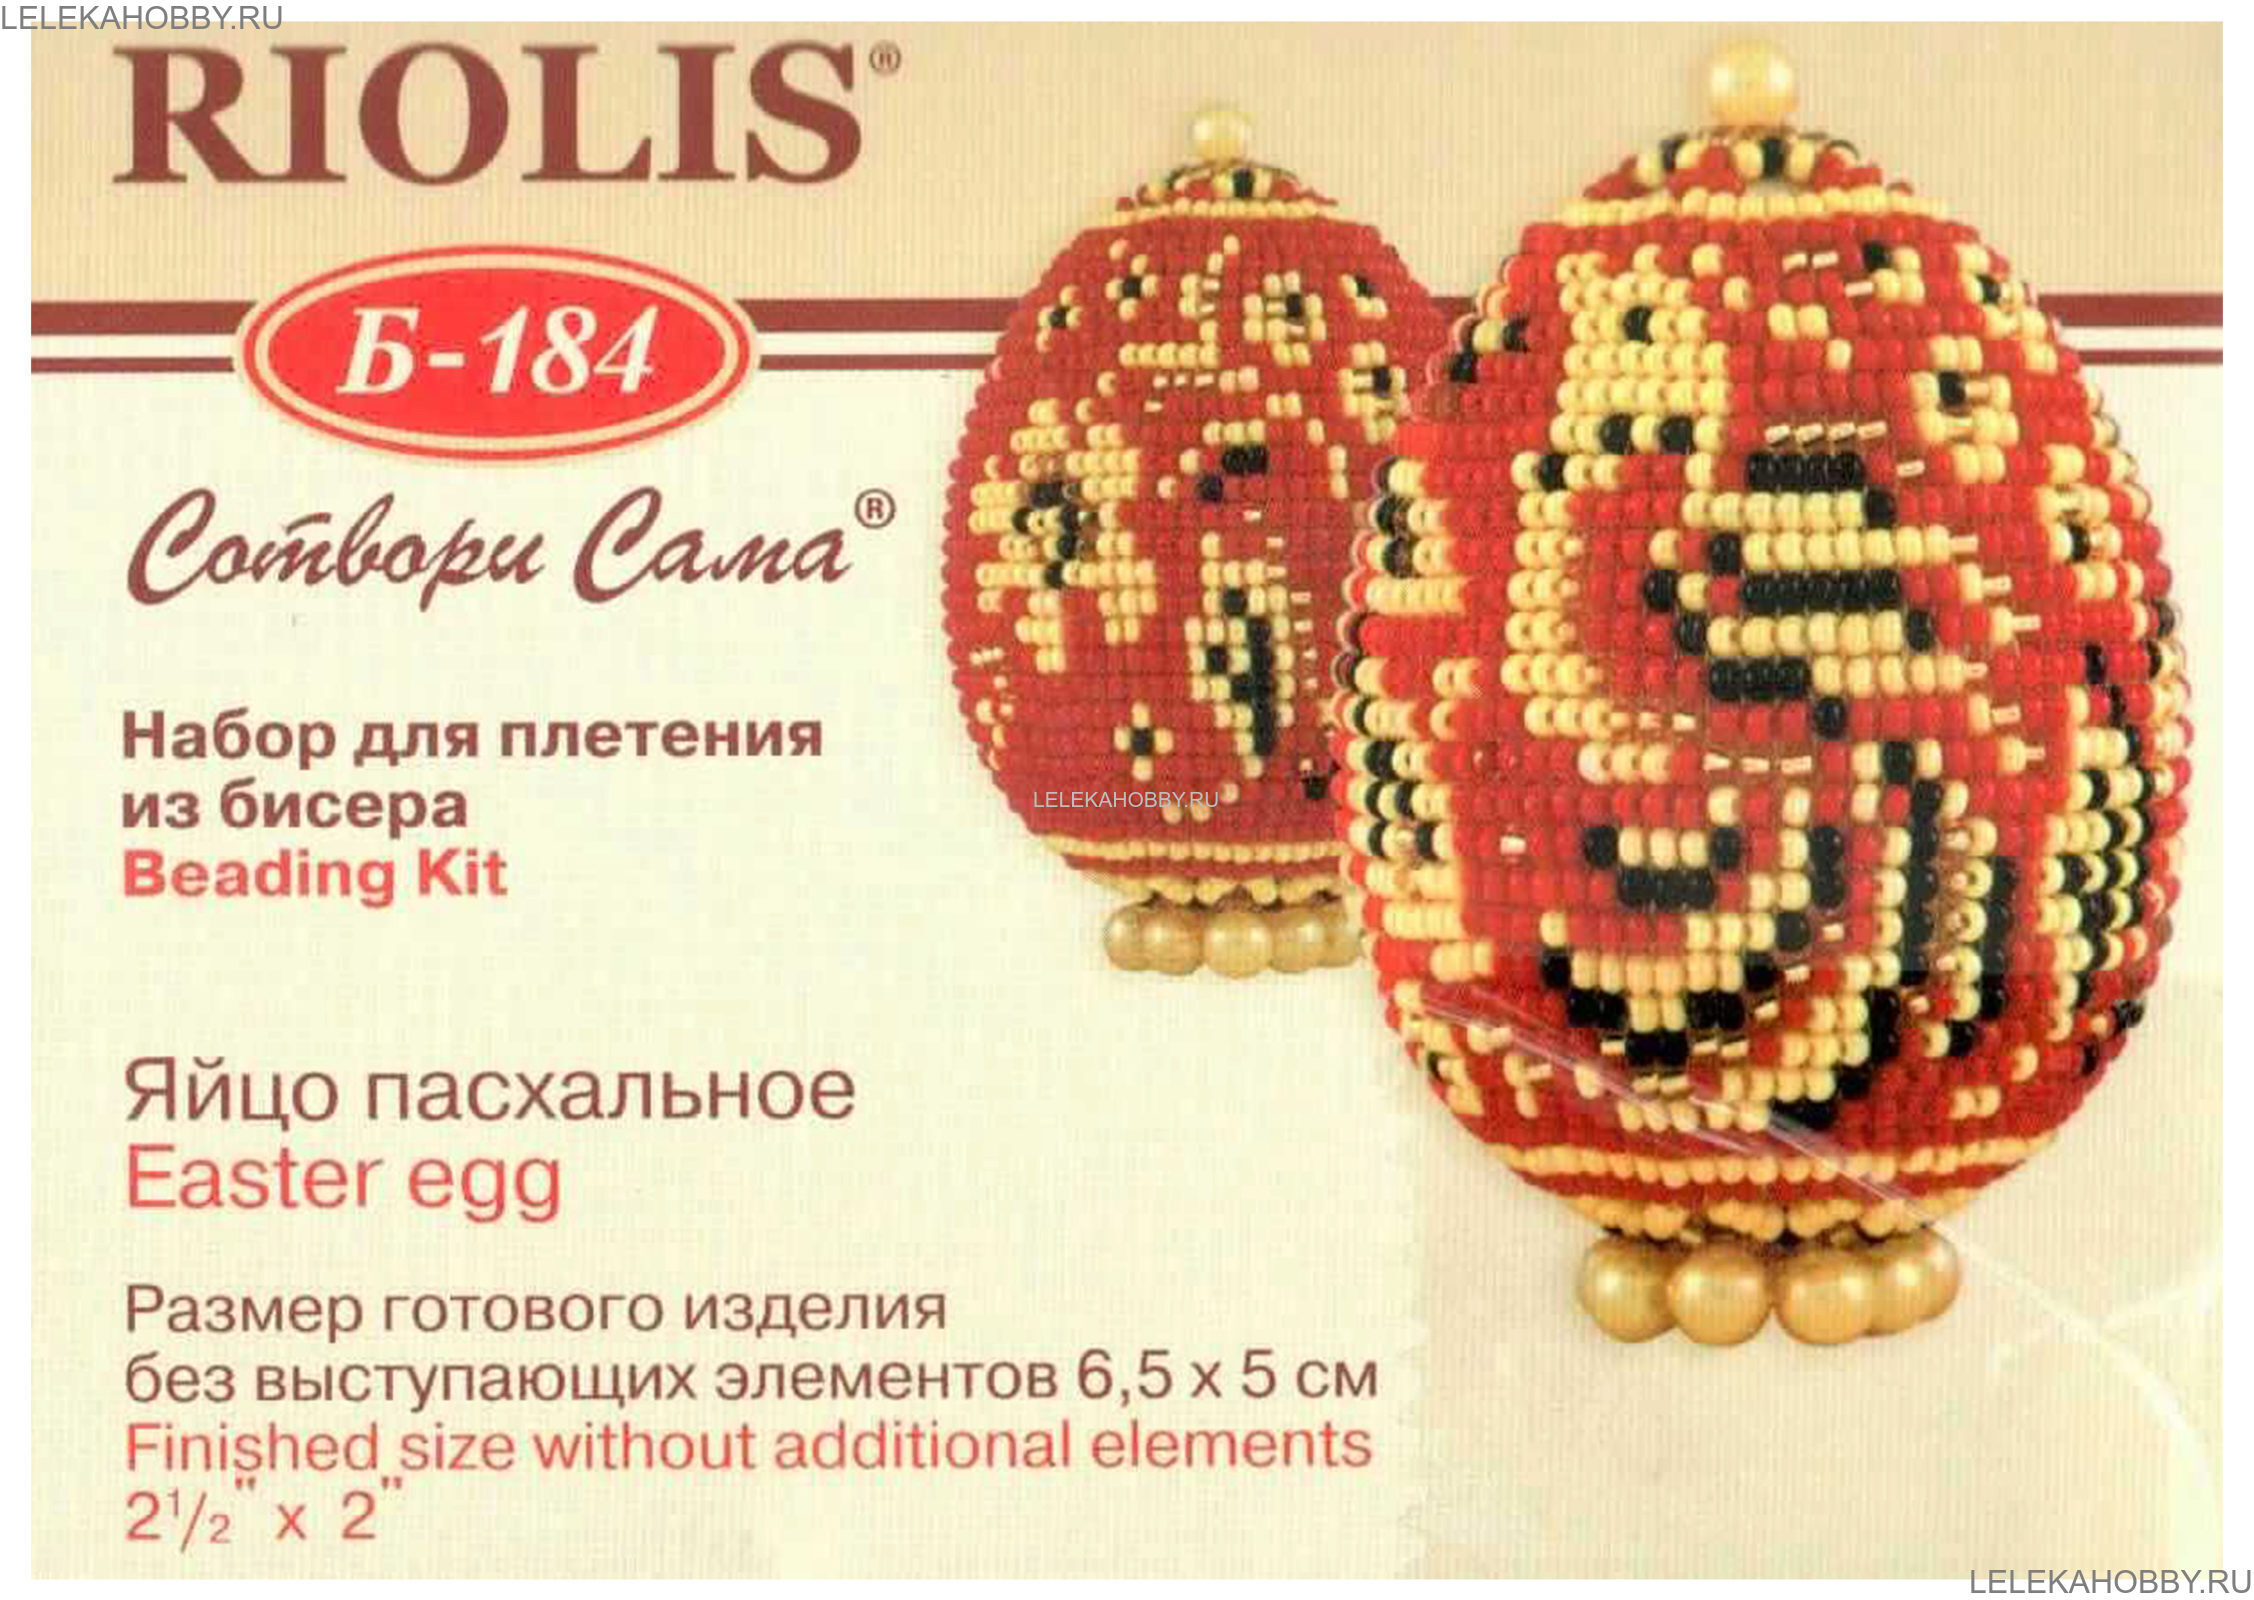 Риолис пасхальное яйцо. Риолис пасхальное яйцо б149. Риолис яйцо пасхальное. Риолис пасхальные яйца бисером. Риолис набор для бисероплетения яйцо пасхальное яйцо.